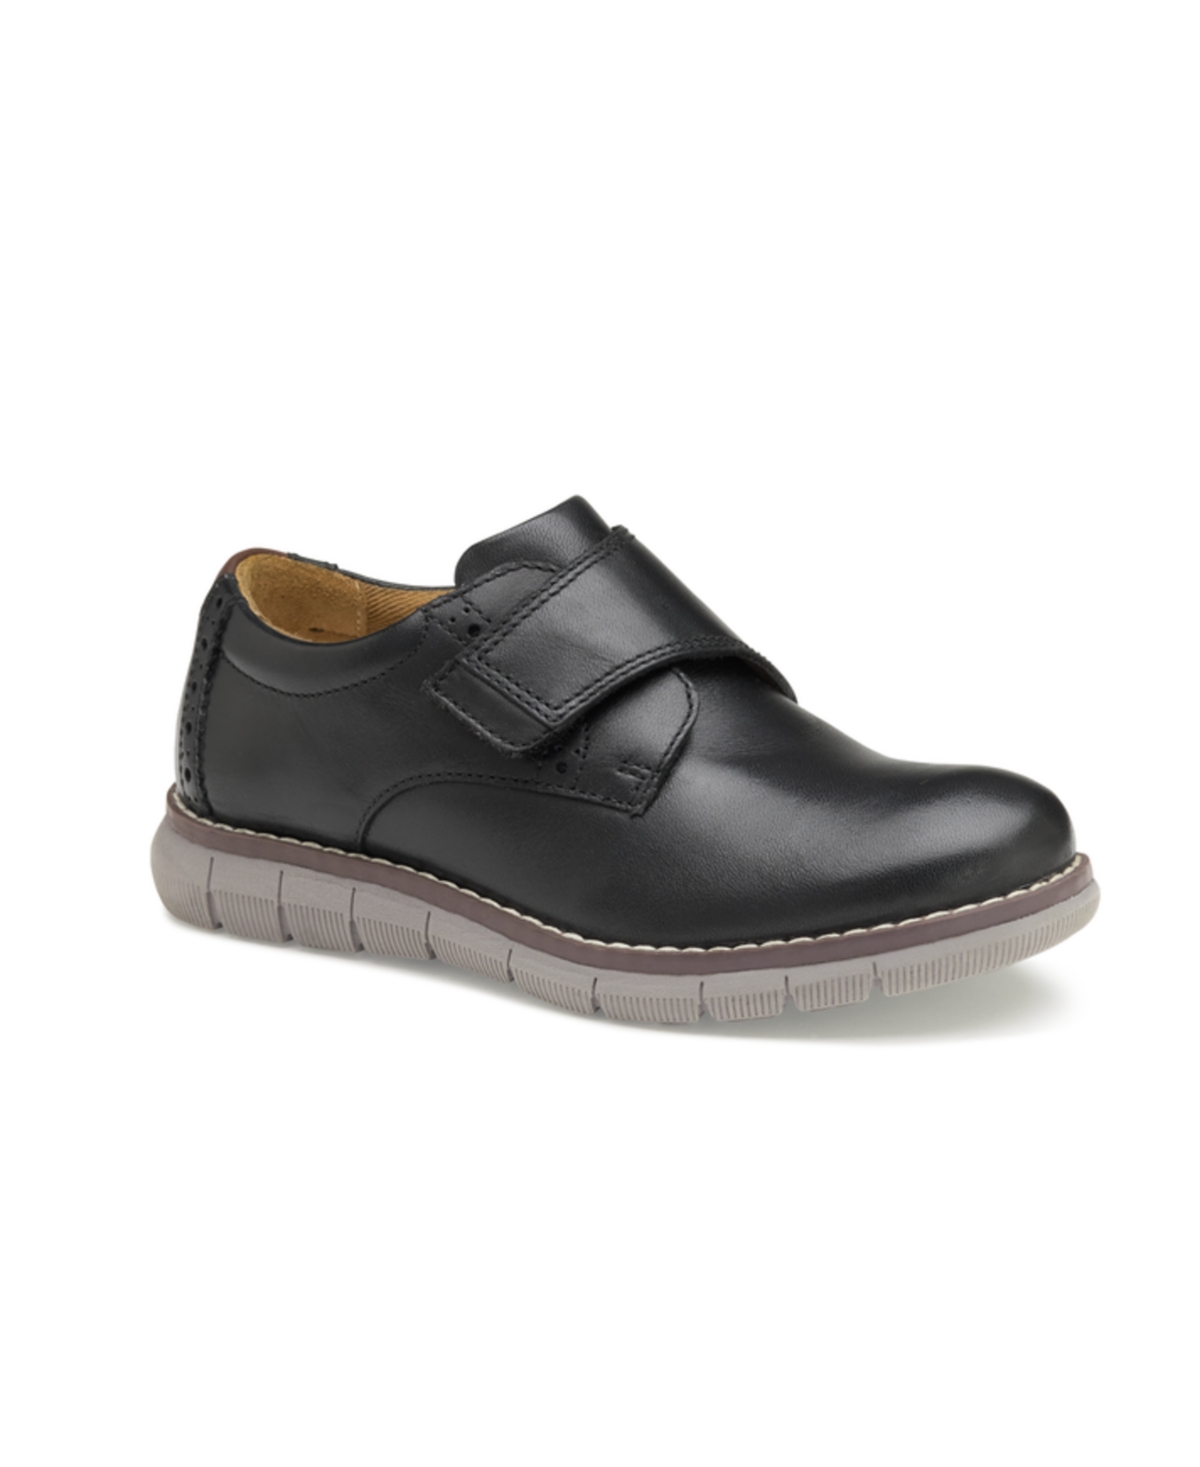 Johnston & Murphy Kids' Little Boys Holden Plain Toe Leather Shoes In Black Full Grain